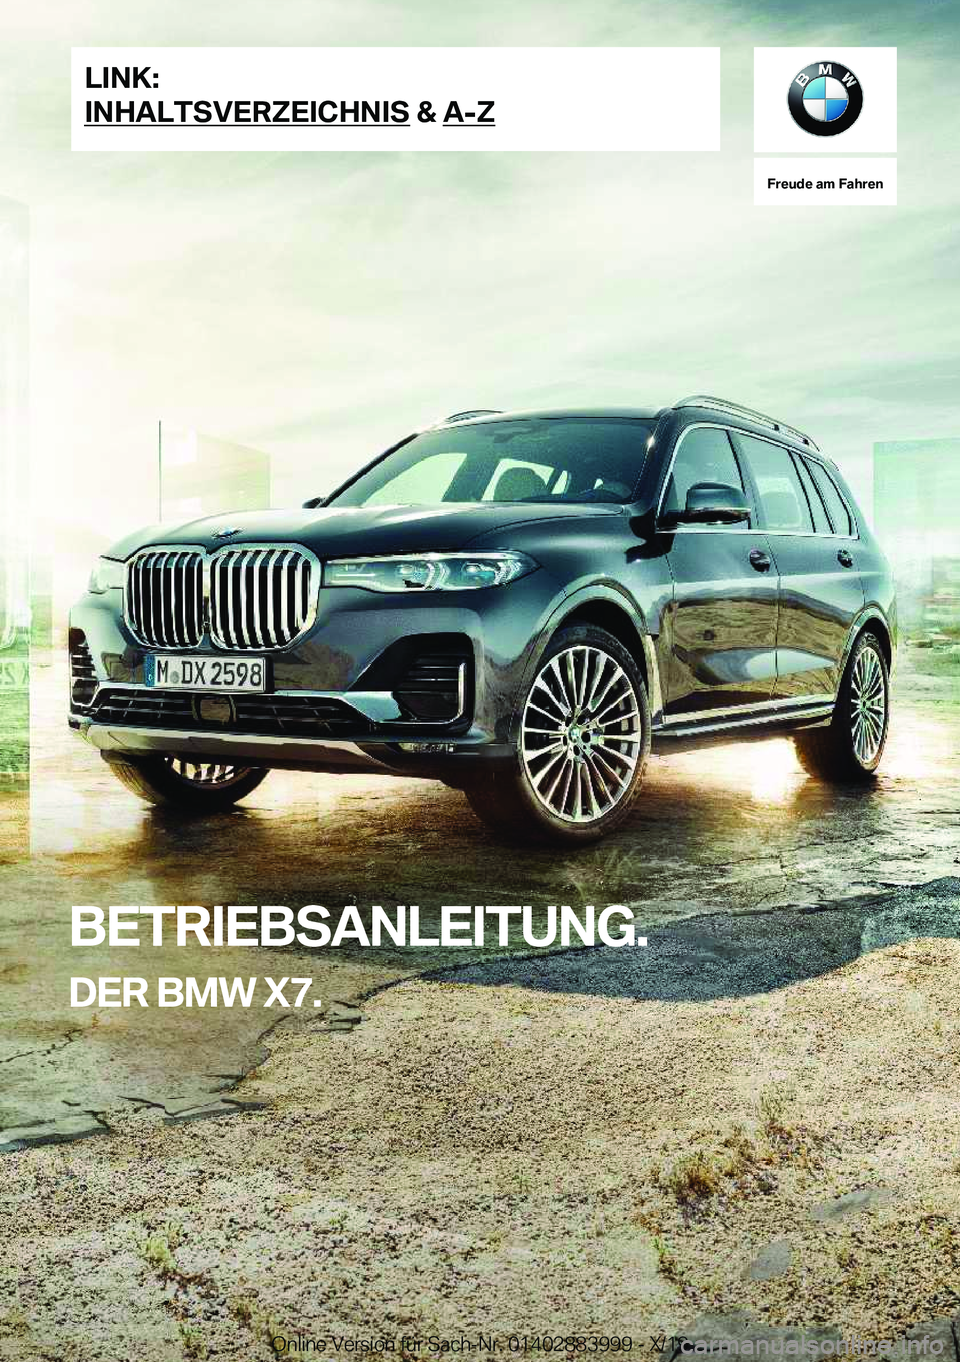 BMW X7 2020  Betriebsanleitungen (in German) �F�r�e�u�d�e��a�m��F�a�h�r�e�n
�B�E�T�R�I�E�B�S�A�N�L�E�I�T�U�N�G�.�D�E�R��B�M�W��X�7�.�L�I�N�K�:
�I�N�H�A�L�T�S�V�E�R�Z�E�I�C�H�N�I�S��&��A�-�Z�O�n�l�i�n�e��V�e�r�s�i�o�n��f�